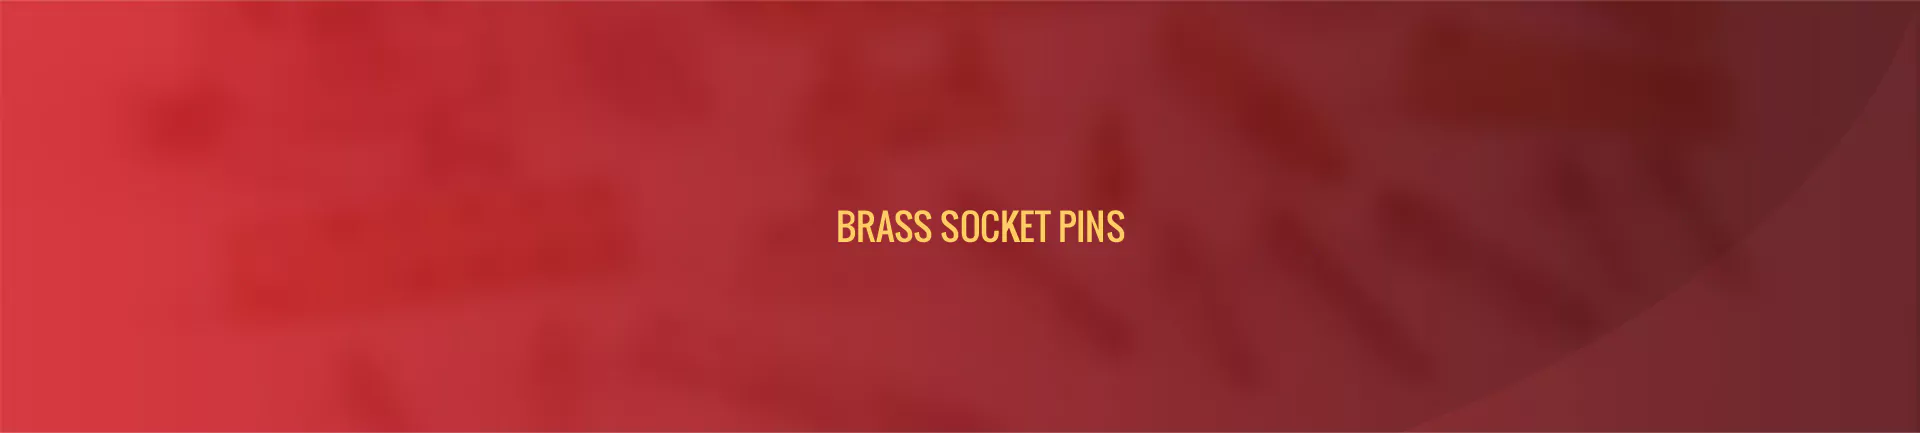 brass-socket-pins-banner